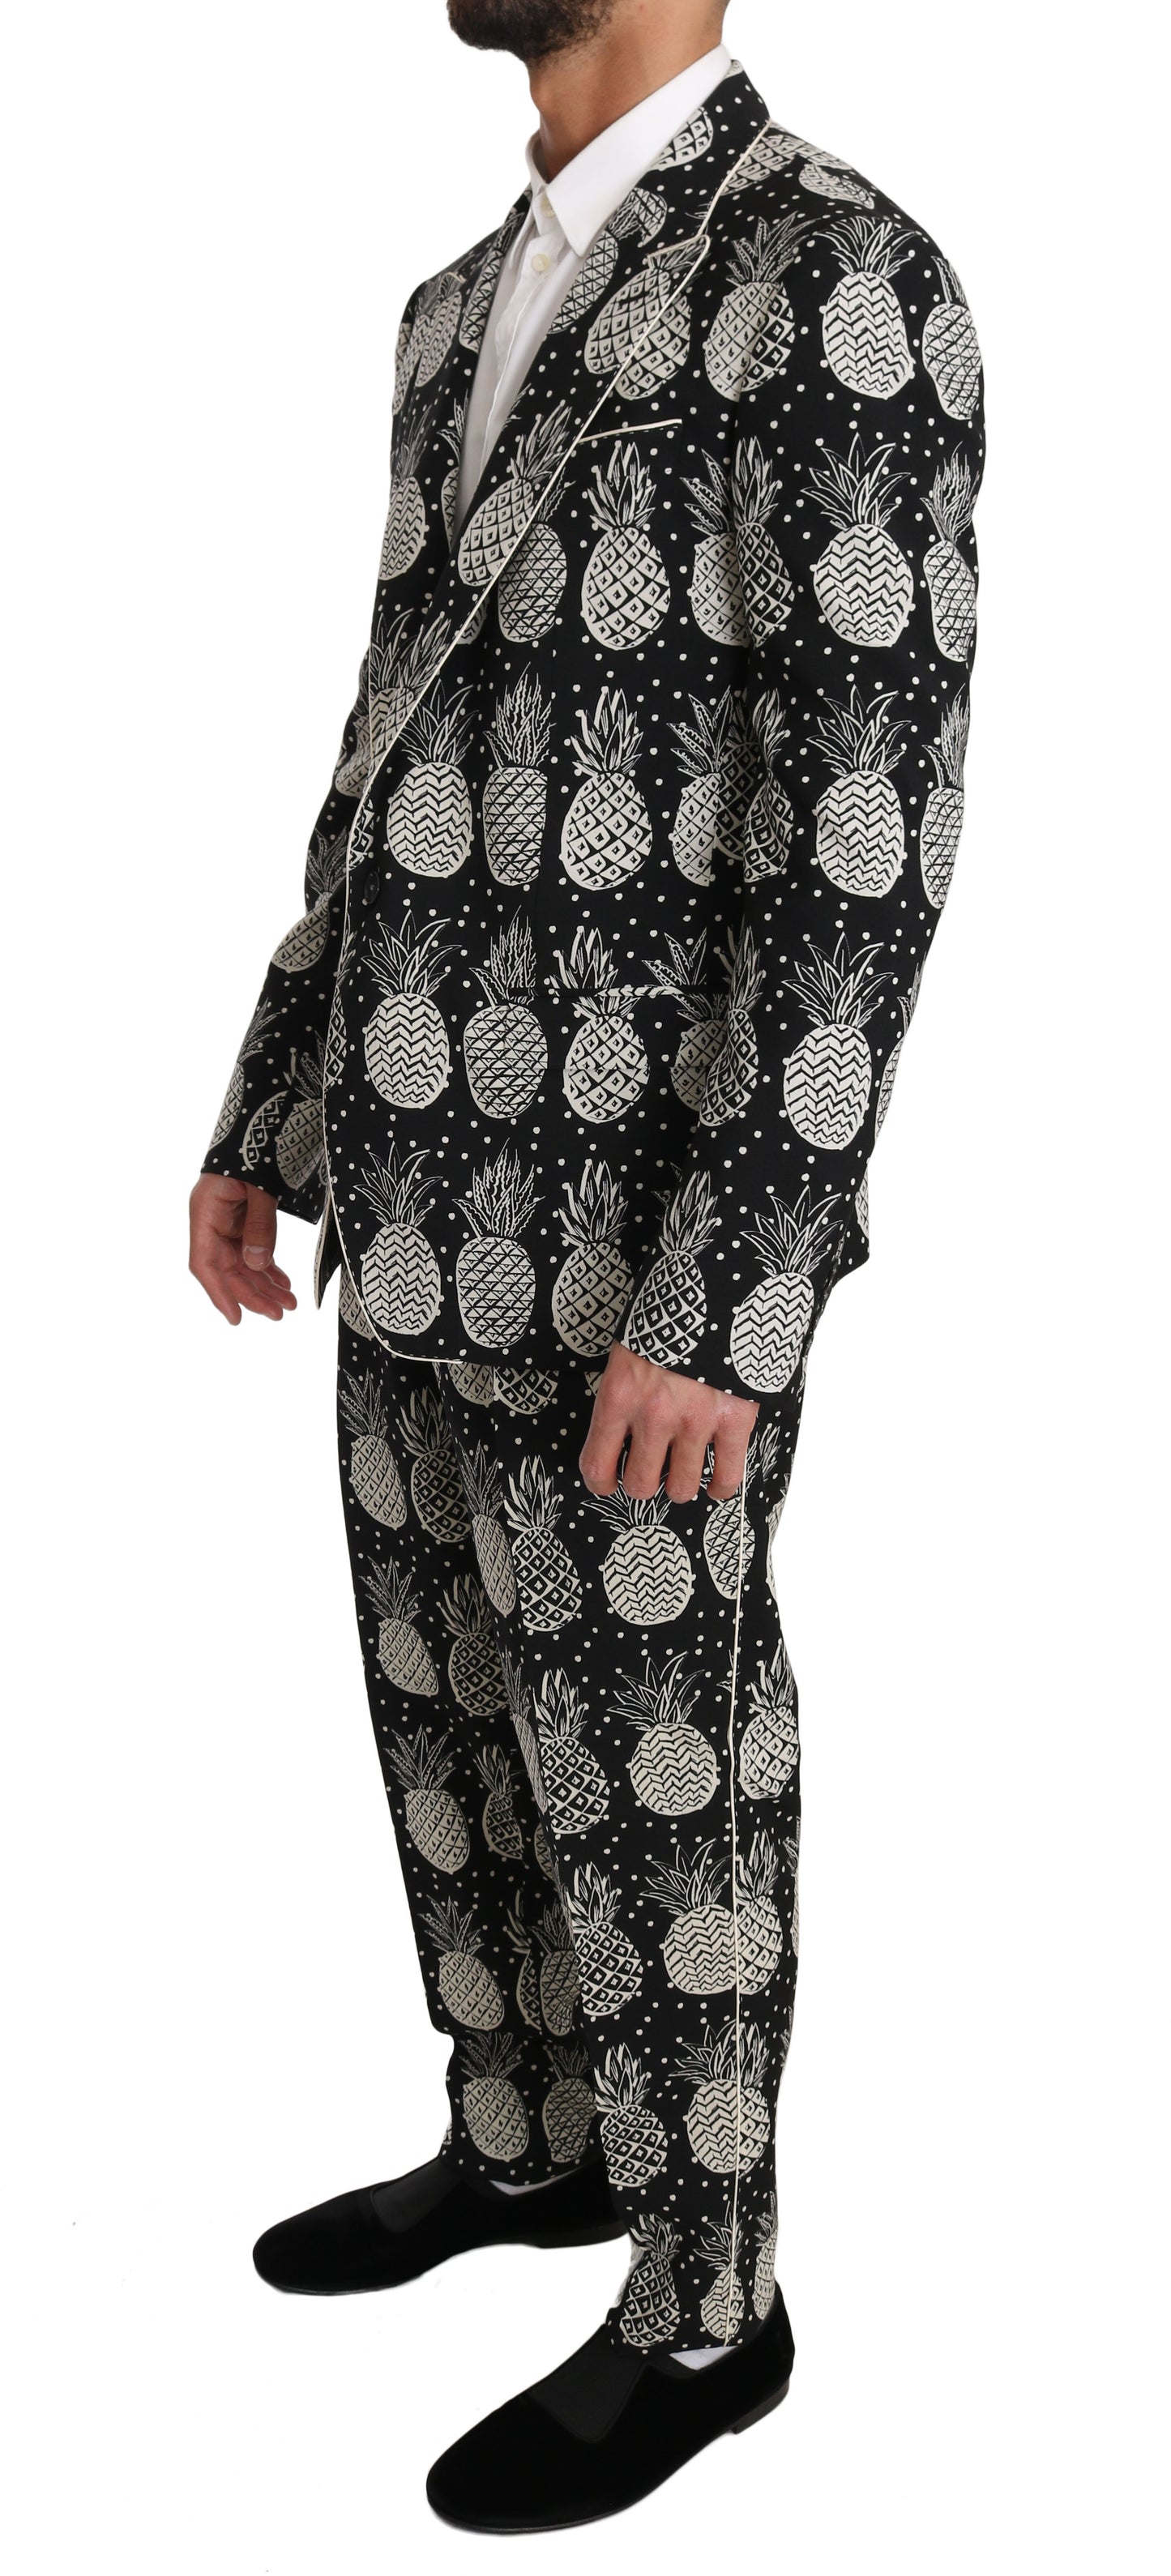 Chic Black Pineapple Print Wool Suit